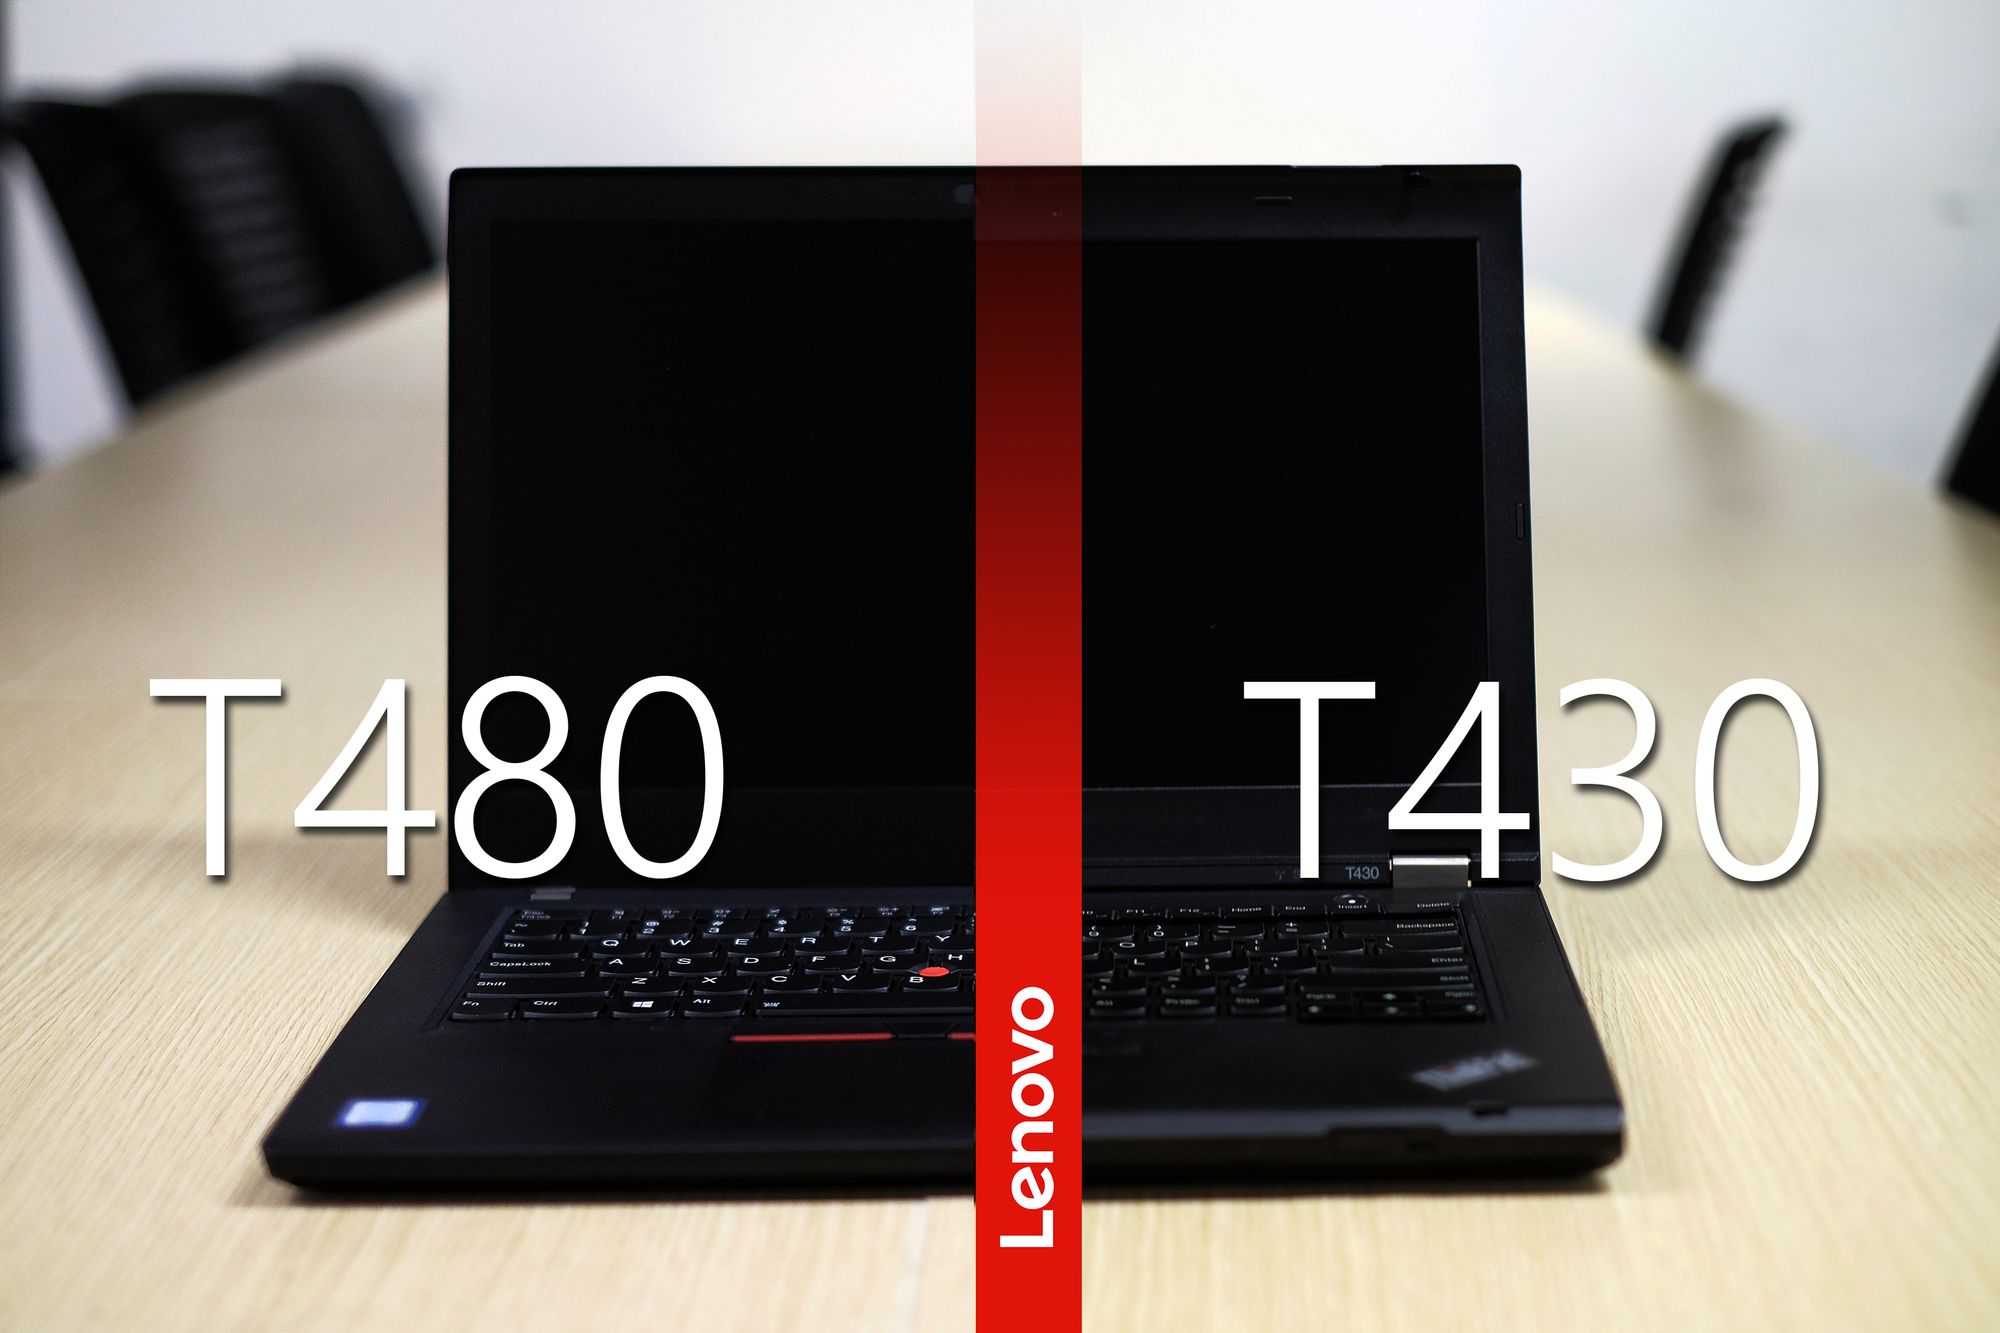 ThinkPad T480 Vs T430: 5 Năm Có Gì Khác?